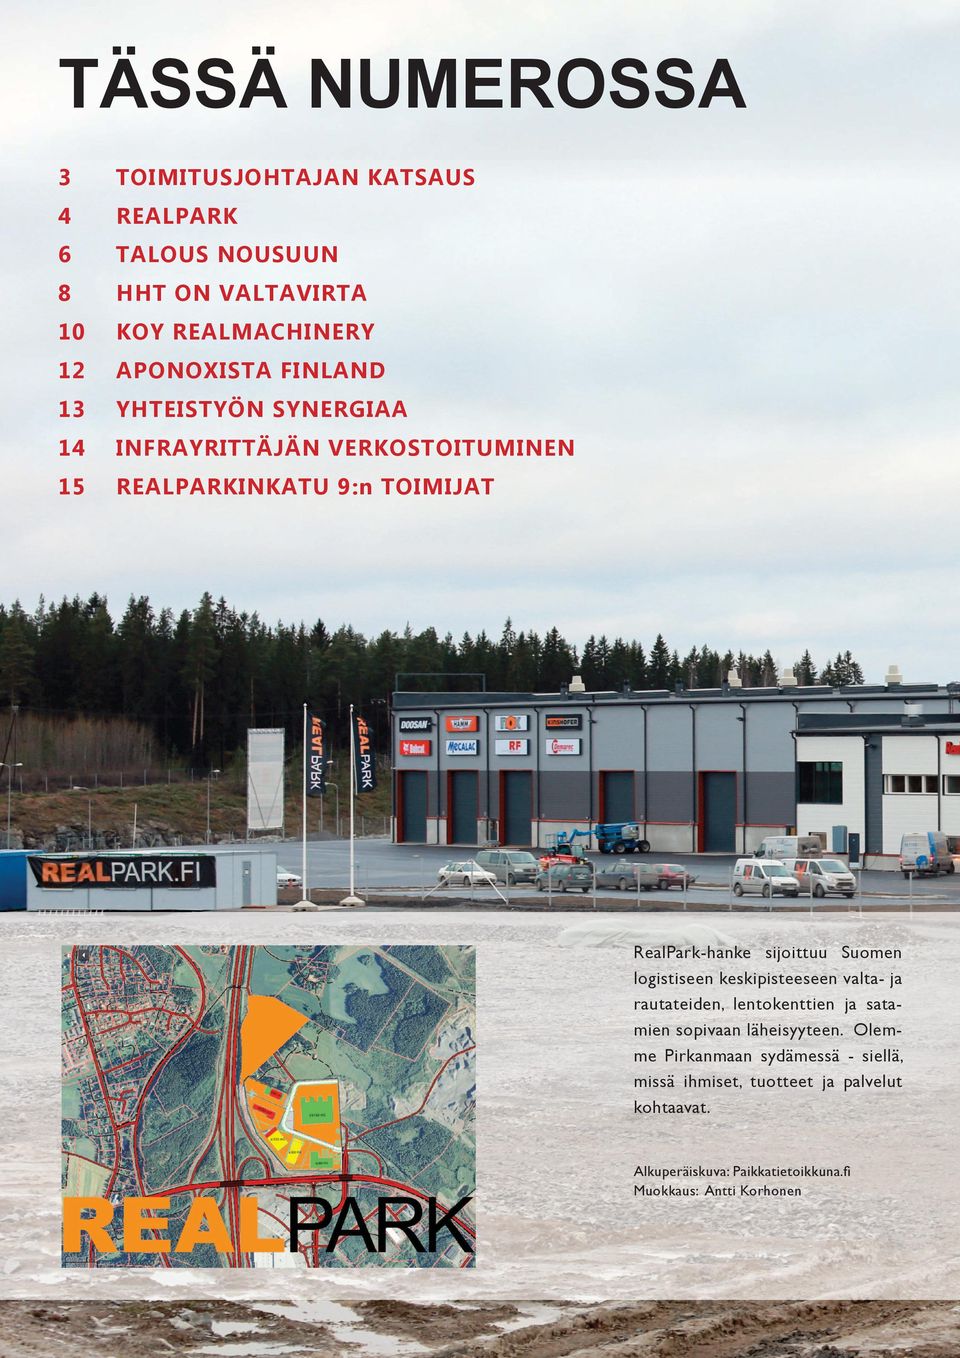 Suomen logistiseen keskipisteeseen valta- ja rautateiden, lentokenttien ja satamien sopivaan läheisyyteen.